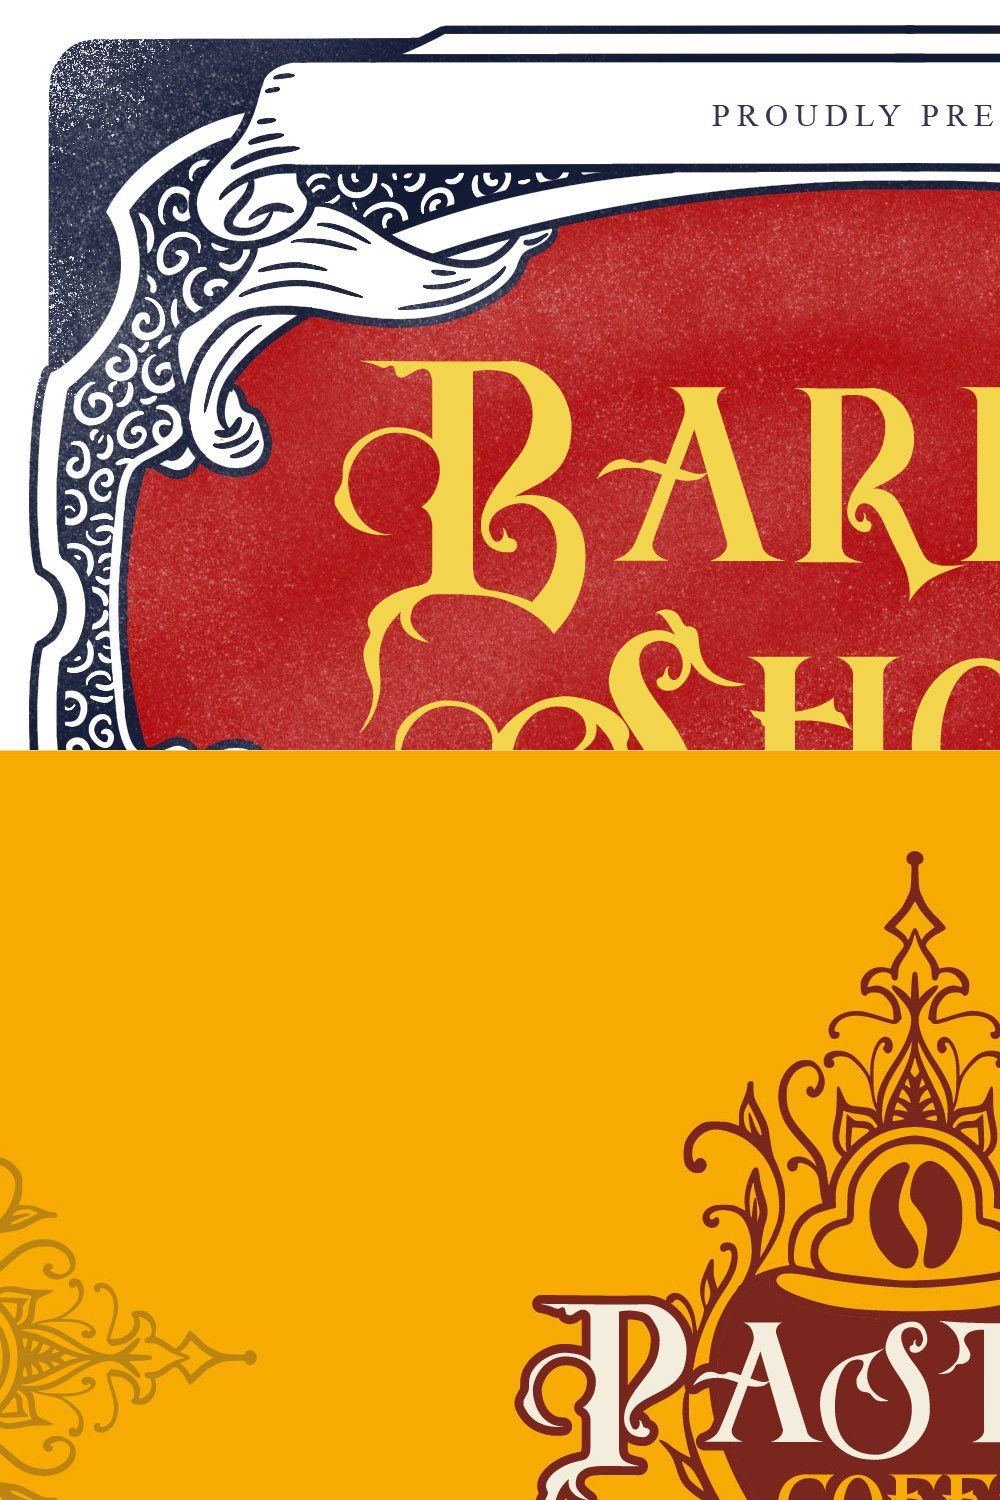 Barbar Shop - serif blackletter pinterest preview image.